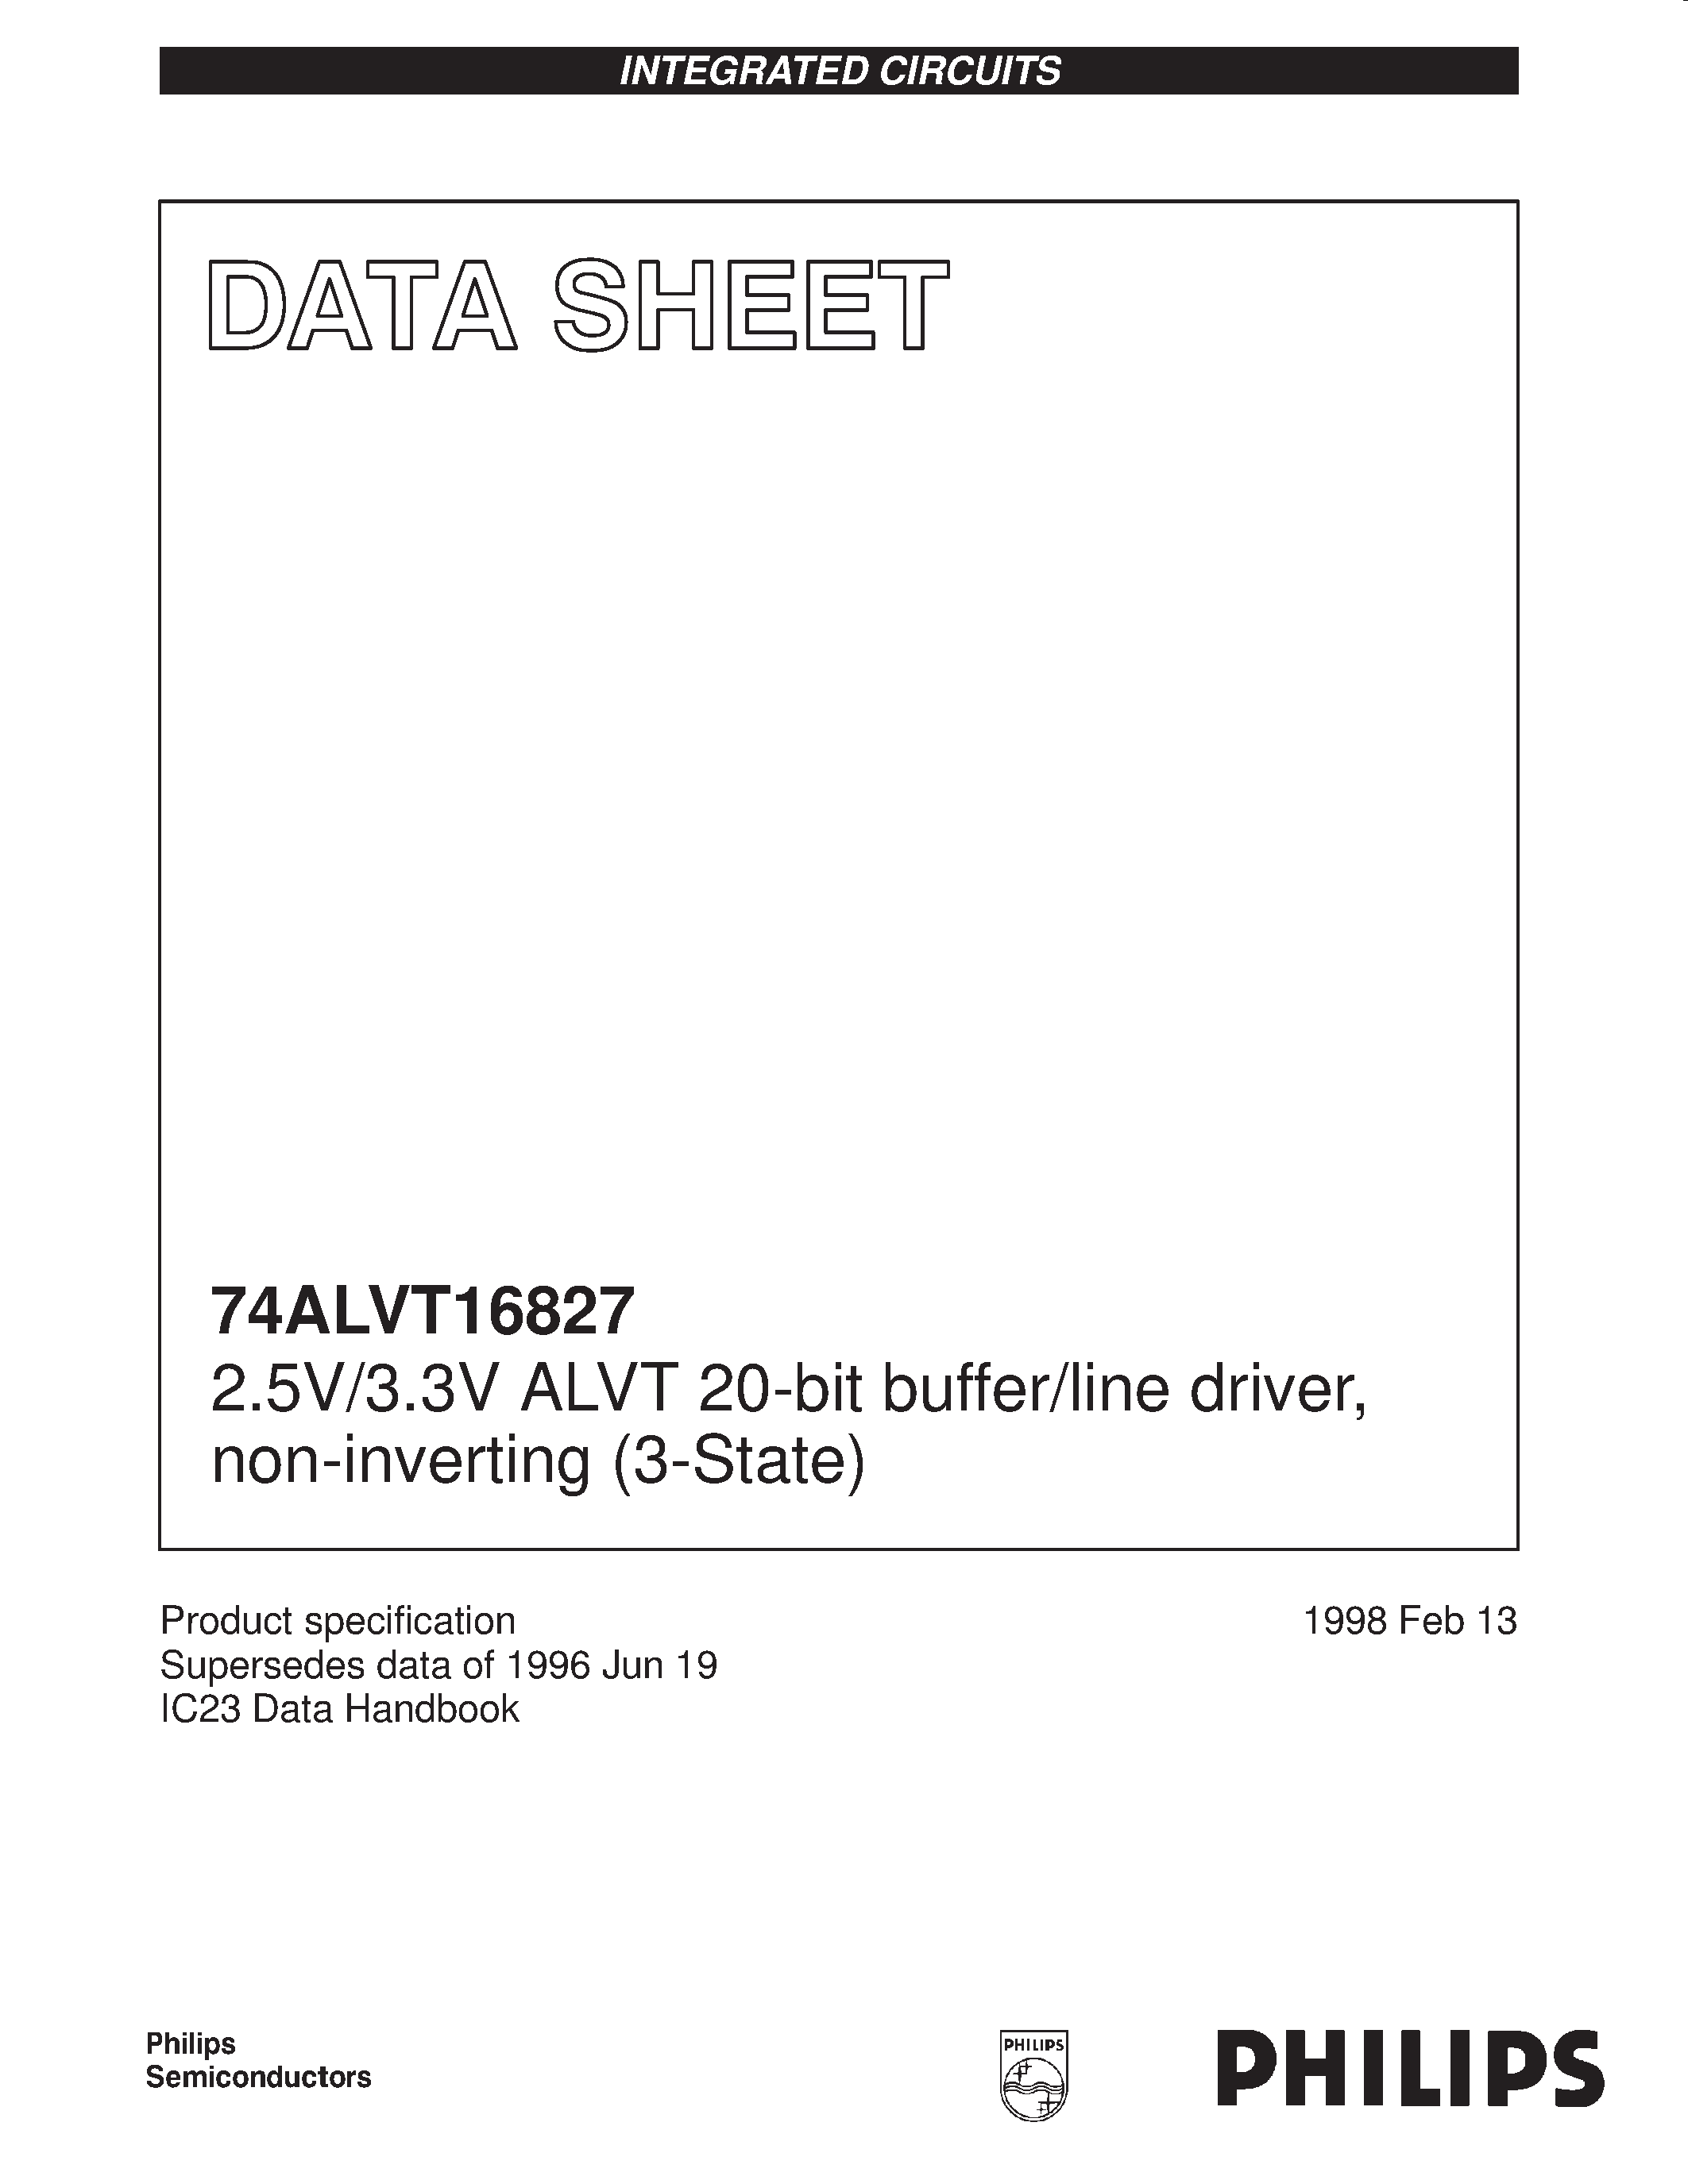 Datasheet 74ALVT16827DGG - 2.5V/3.3V ALVT 20-bit buffer/line driver/ non-inverting 3-State page 1